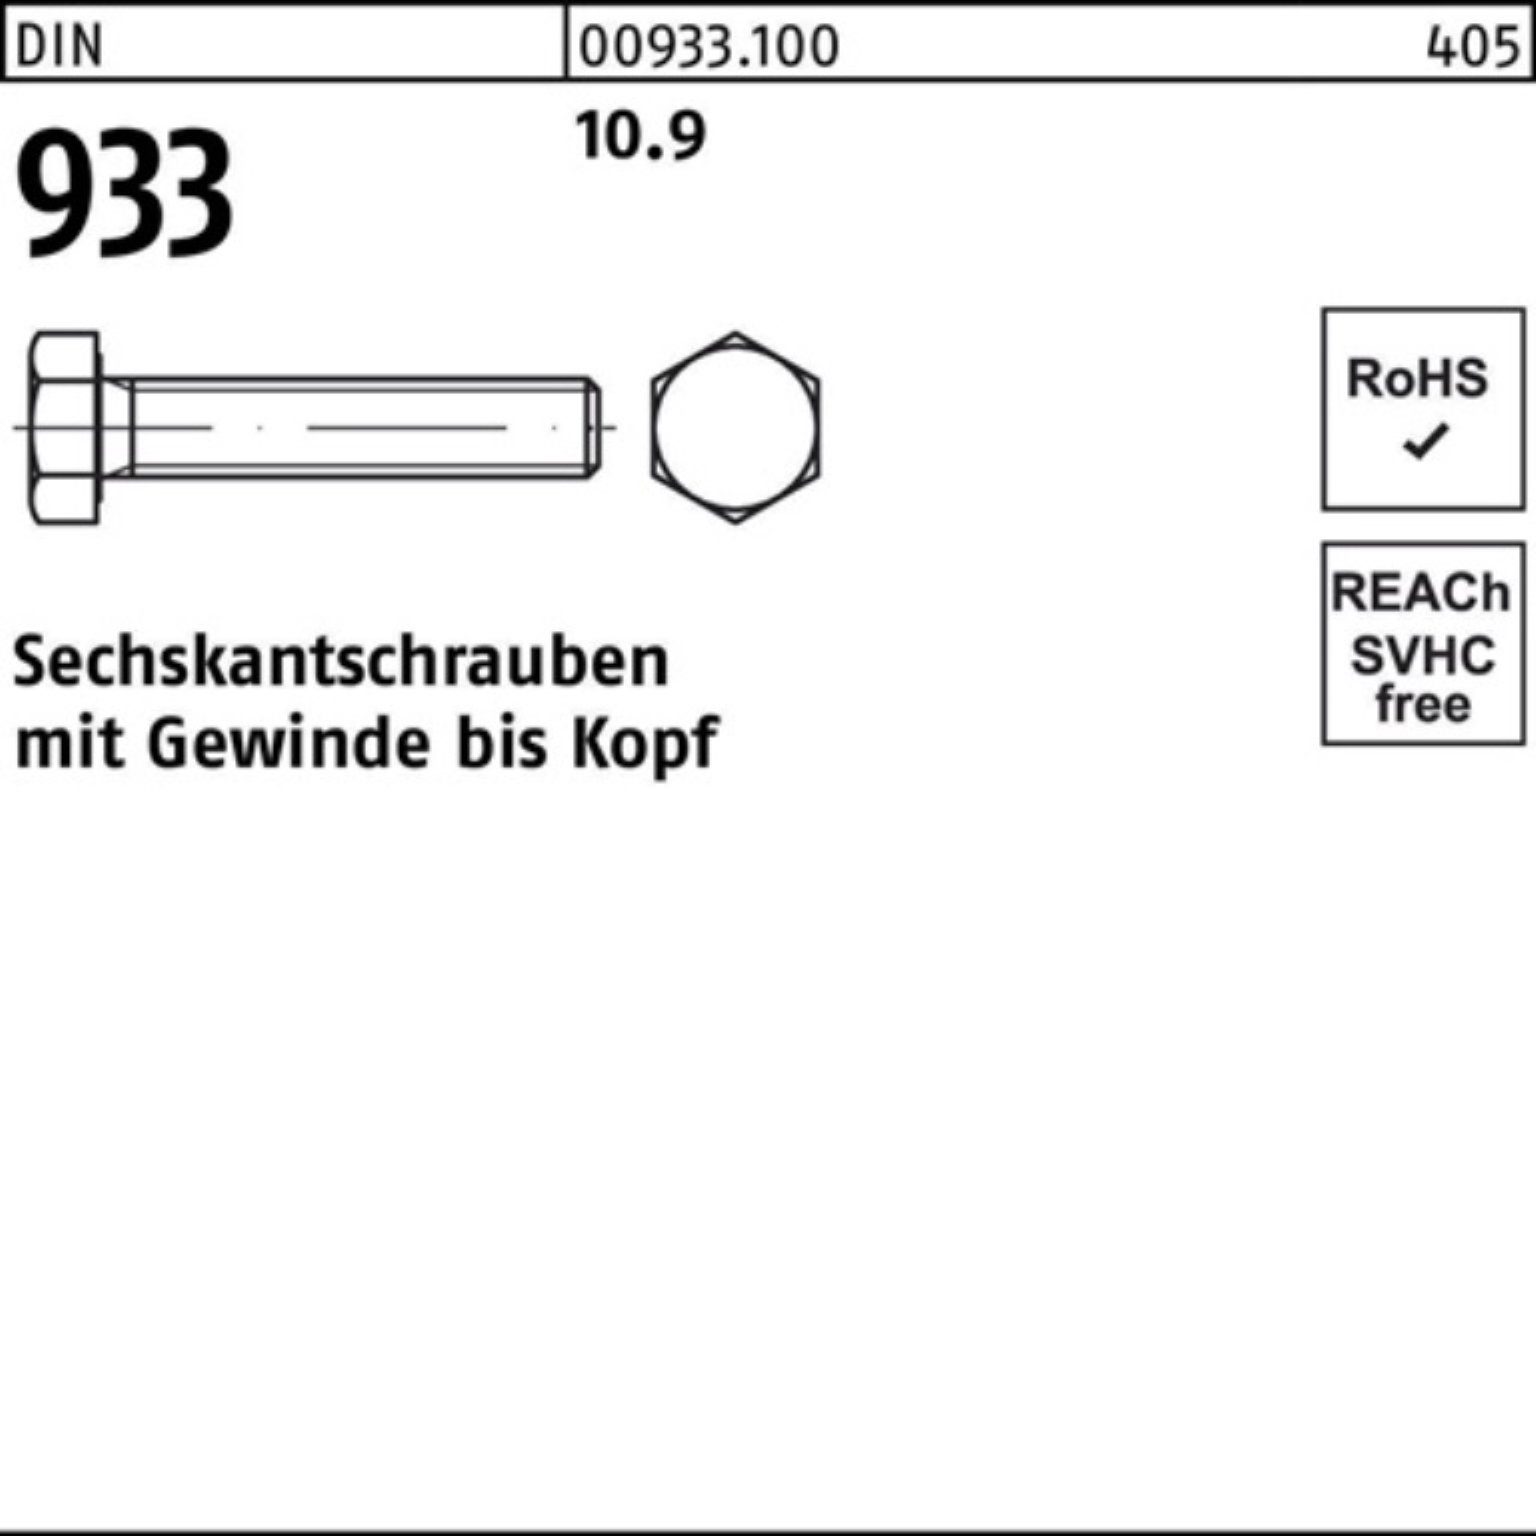 Reyher Sechskantschraube 100er 65 933 Sechskantschraube DIN DIN VG 1 M36x 10.9 Pack Stück 933